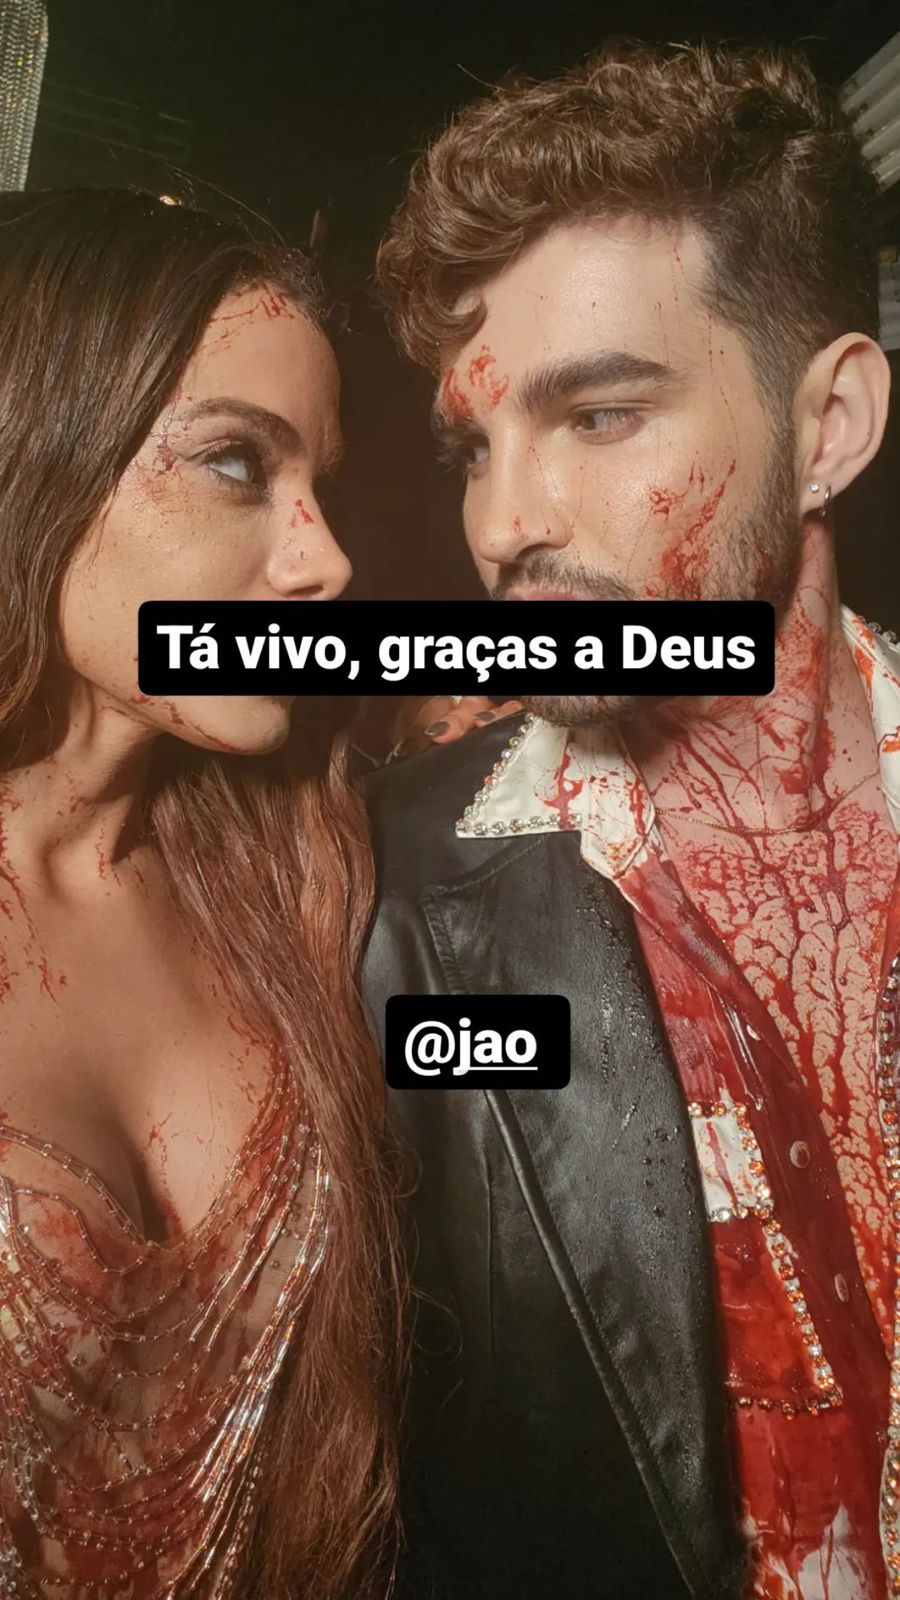 Anitta publicou a foto acima no instagram, ensanguentada com Jão (Reprodução - Instagram)